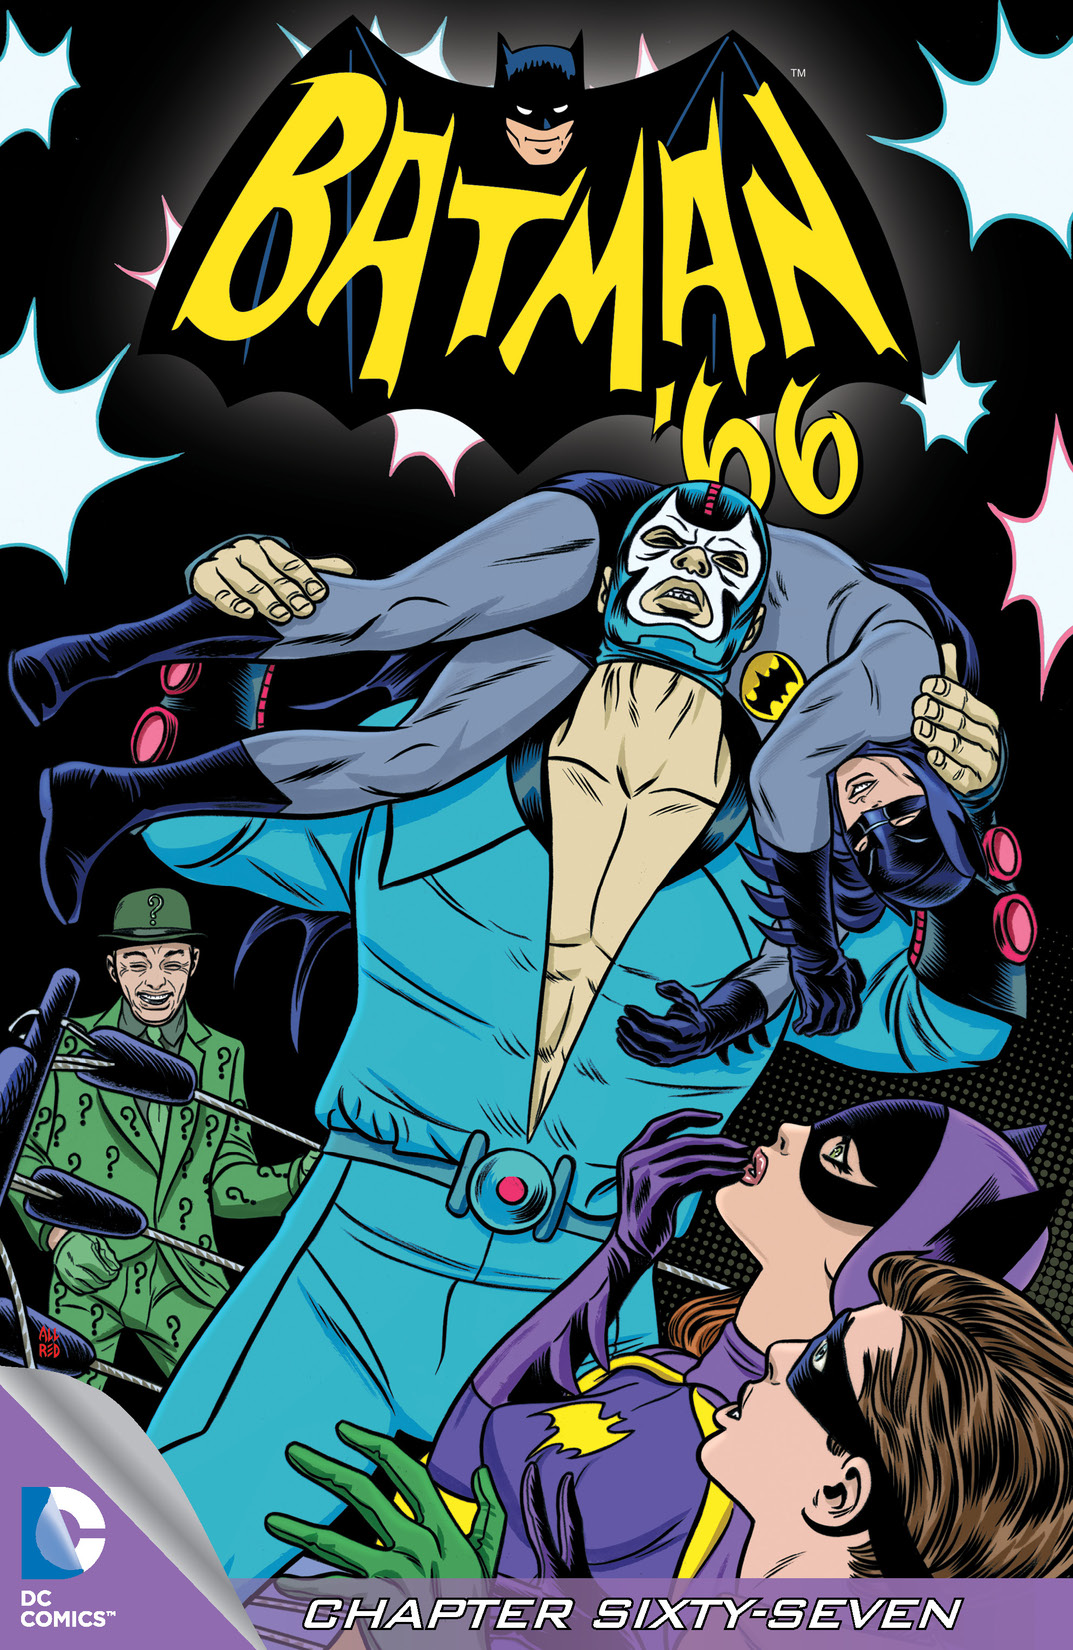 Batman '66 #67 preview images